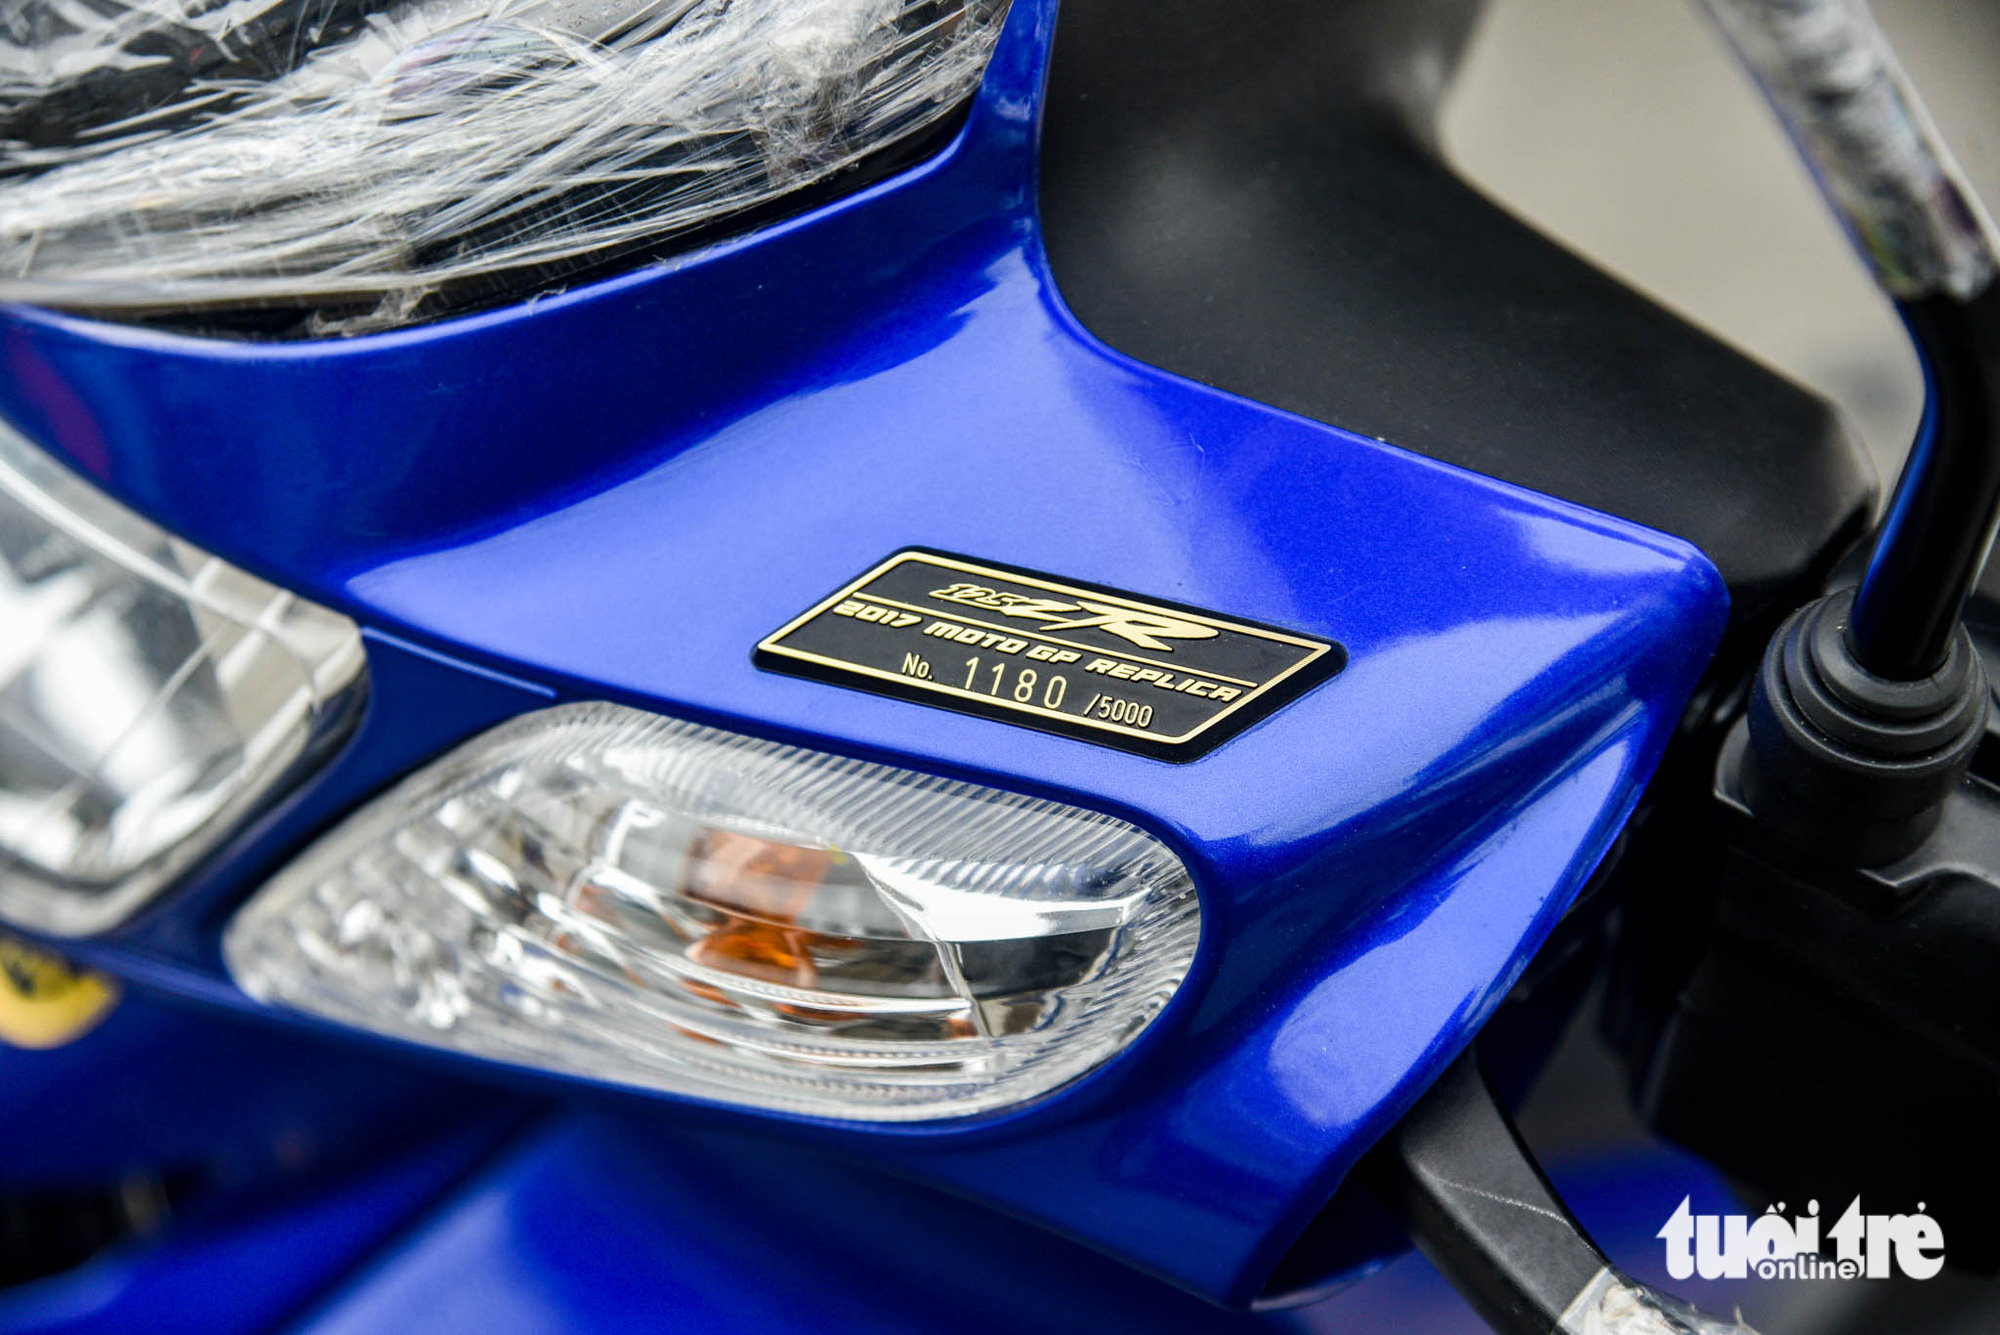 Yamaha 125ZR bản giới hạn giá khoảng 600 triệu đồng tại Hà Nội, dành cho dân chơi thích hàng độc - Ảnh 9.